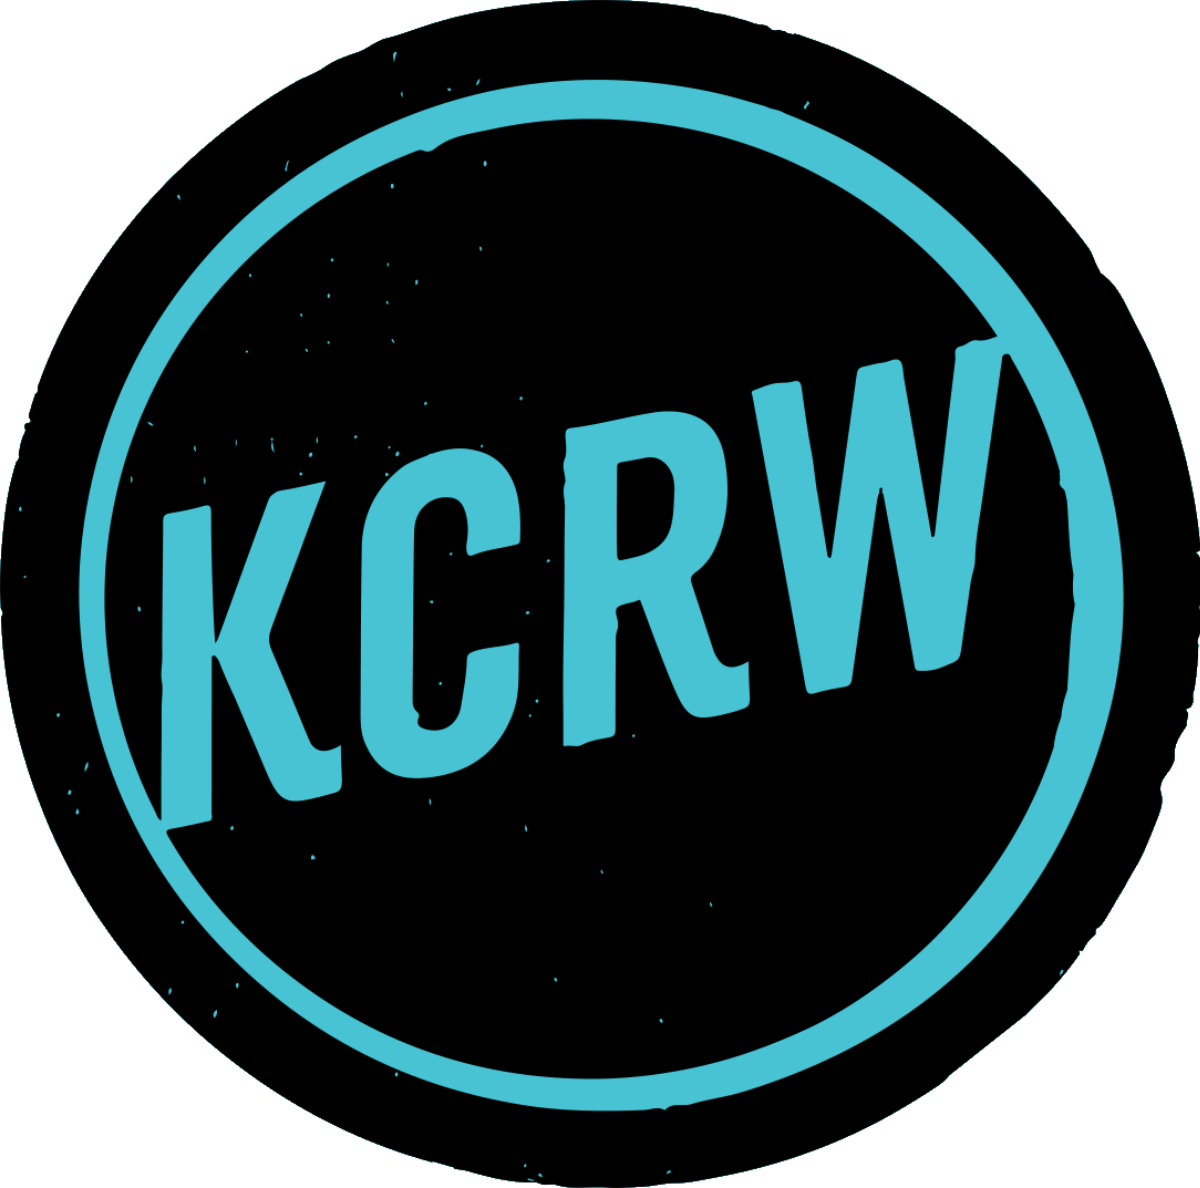 KCRW - Wikipedia